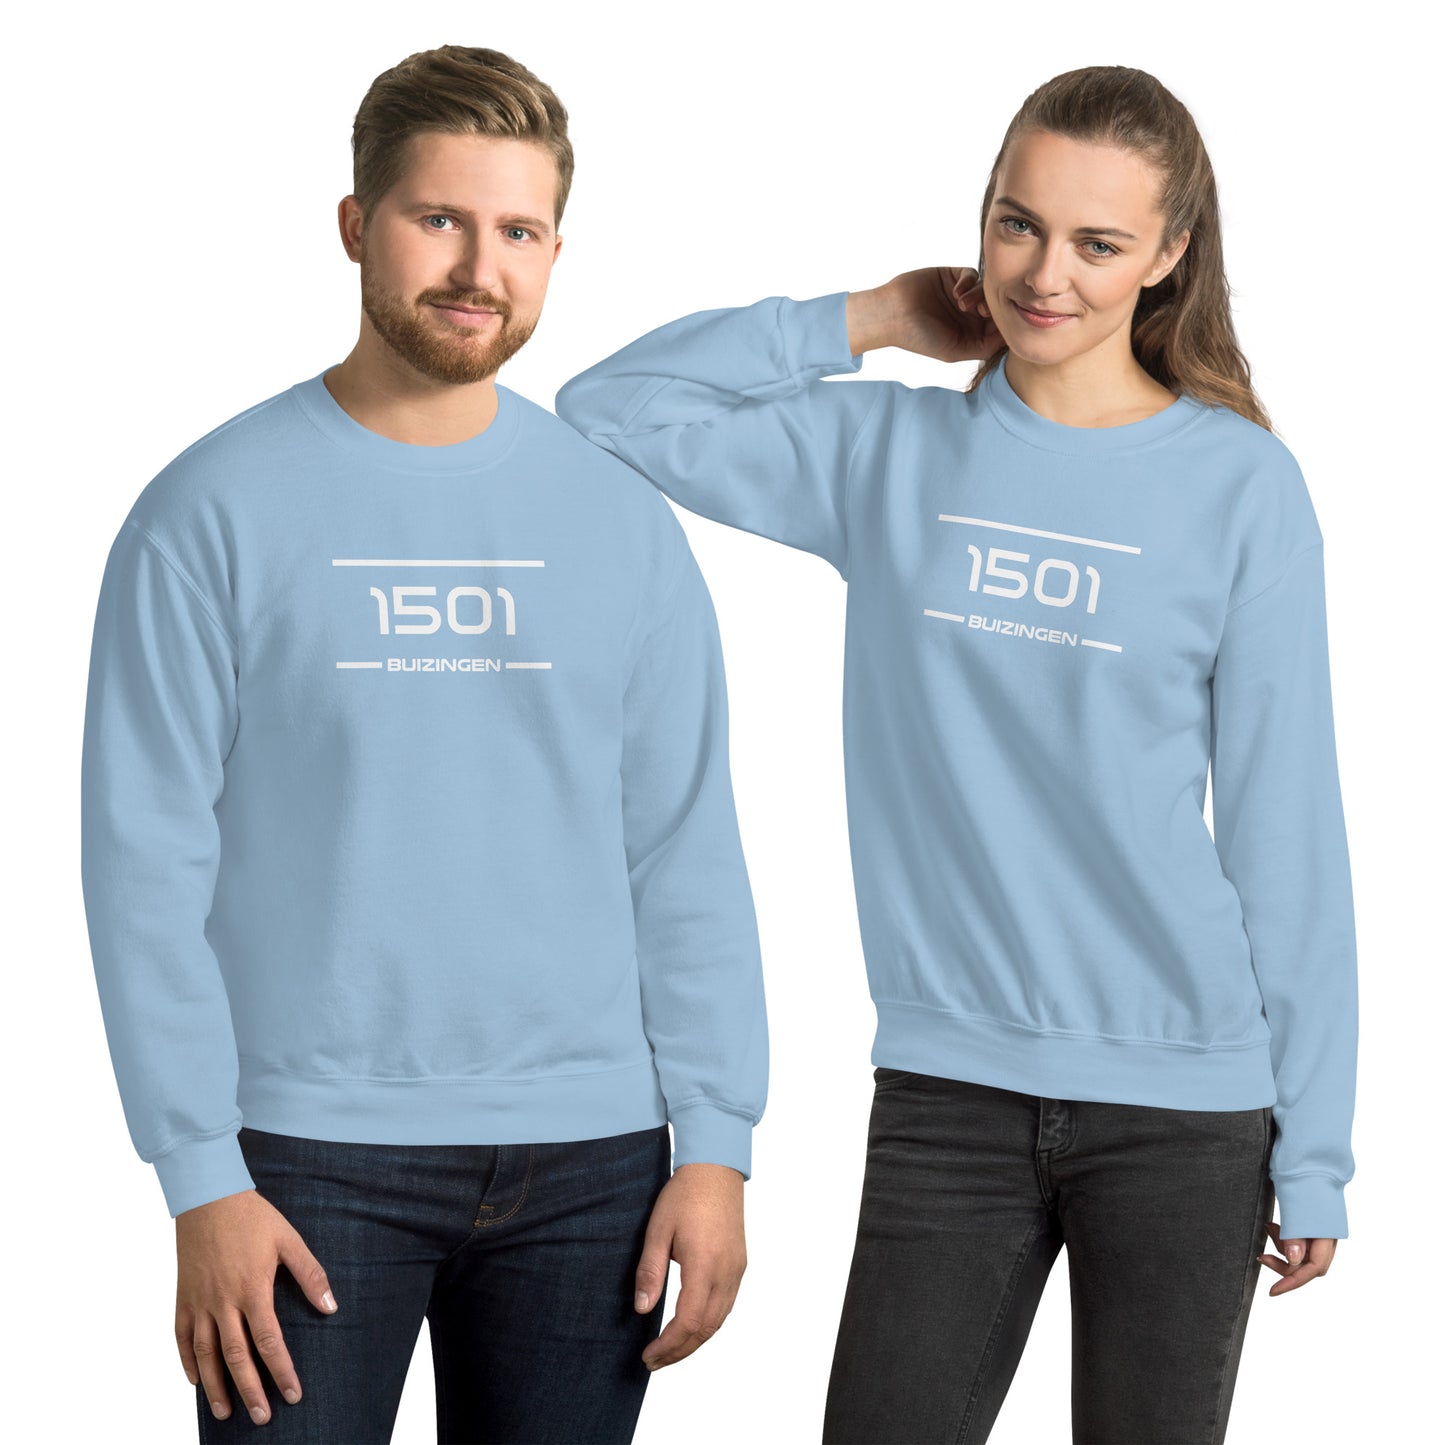 Sweater - 1501 - Buizingen (M/V)